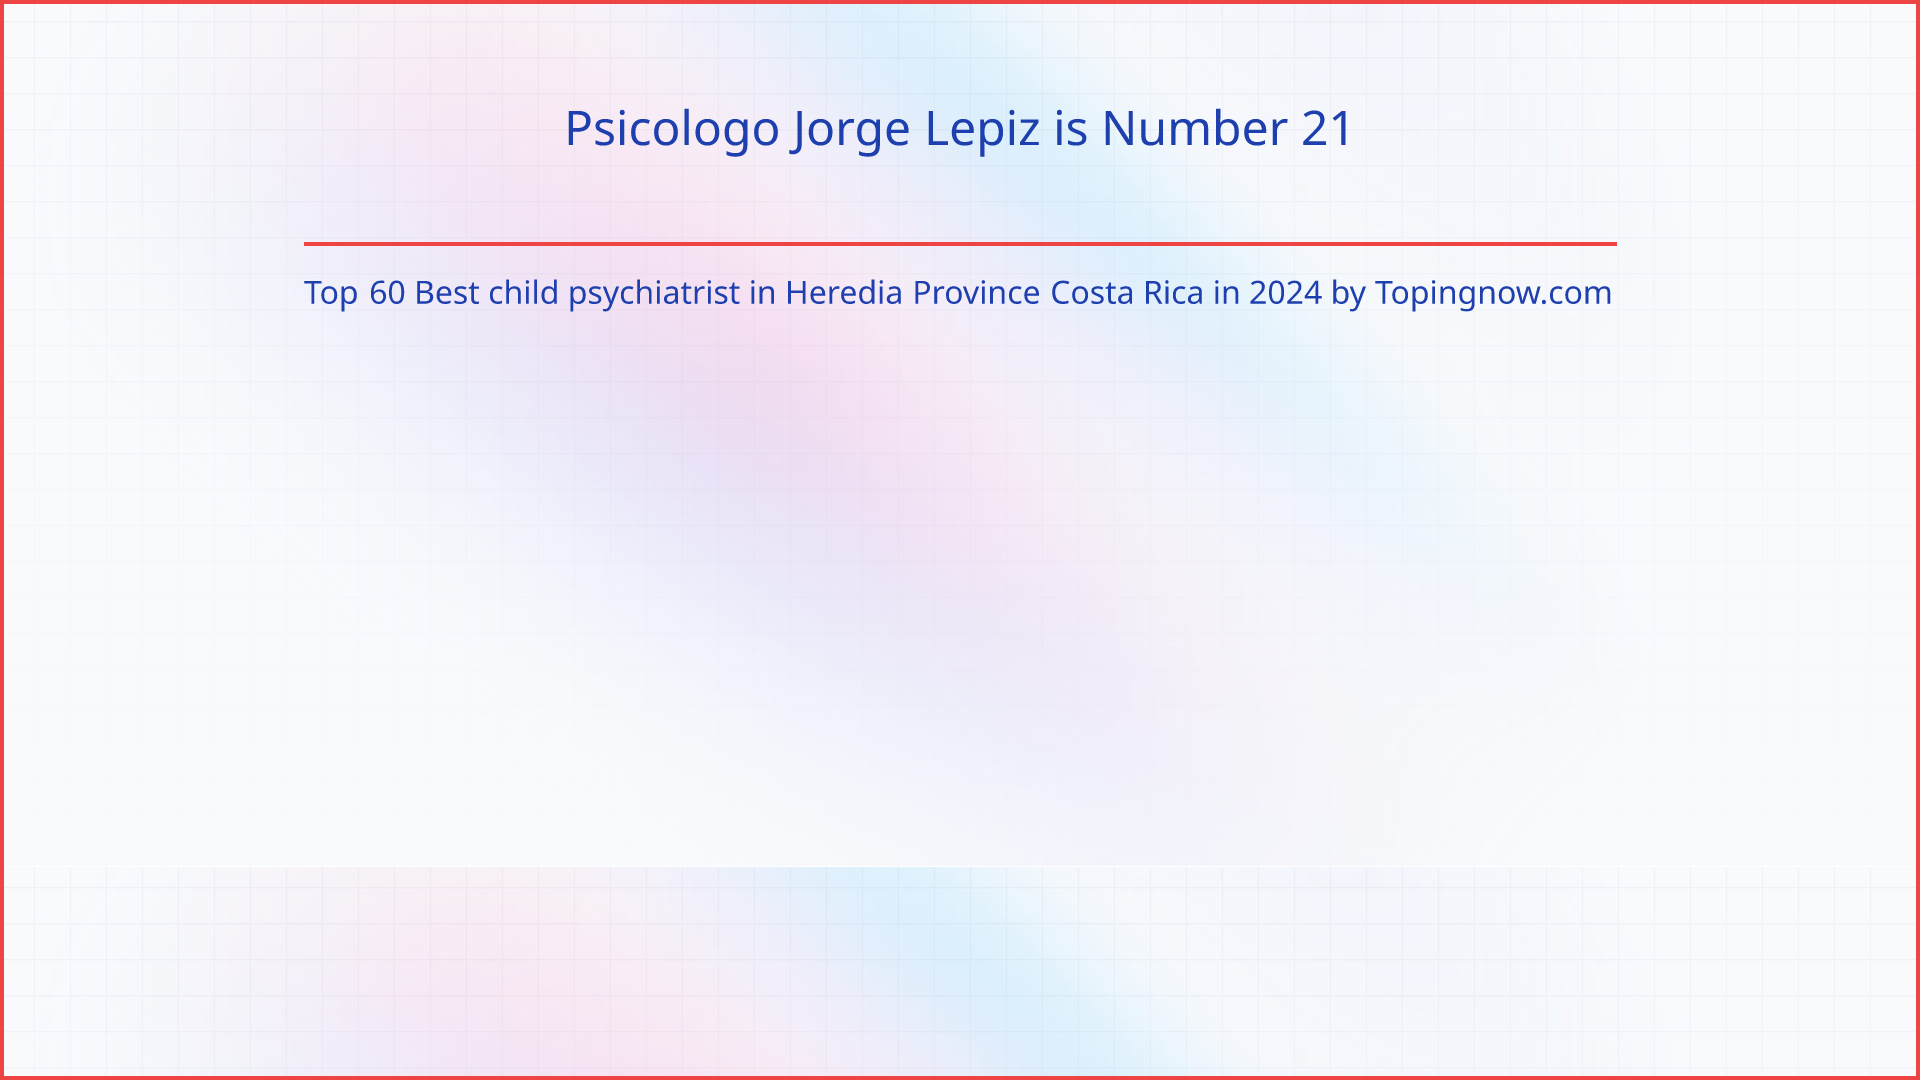 Psicologo Jorge Lepiz: Top 60 Best child psychiatrist in Heredia Province Costa Rica in 2024